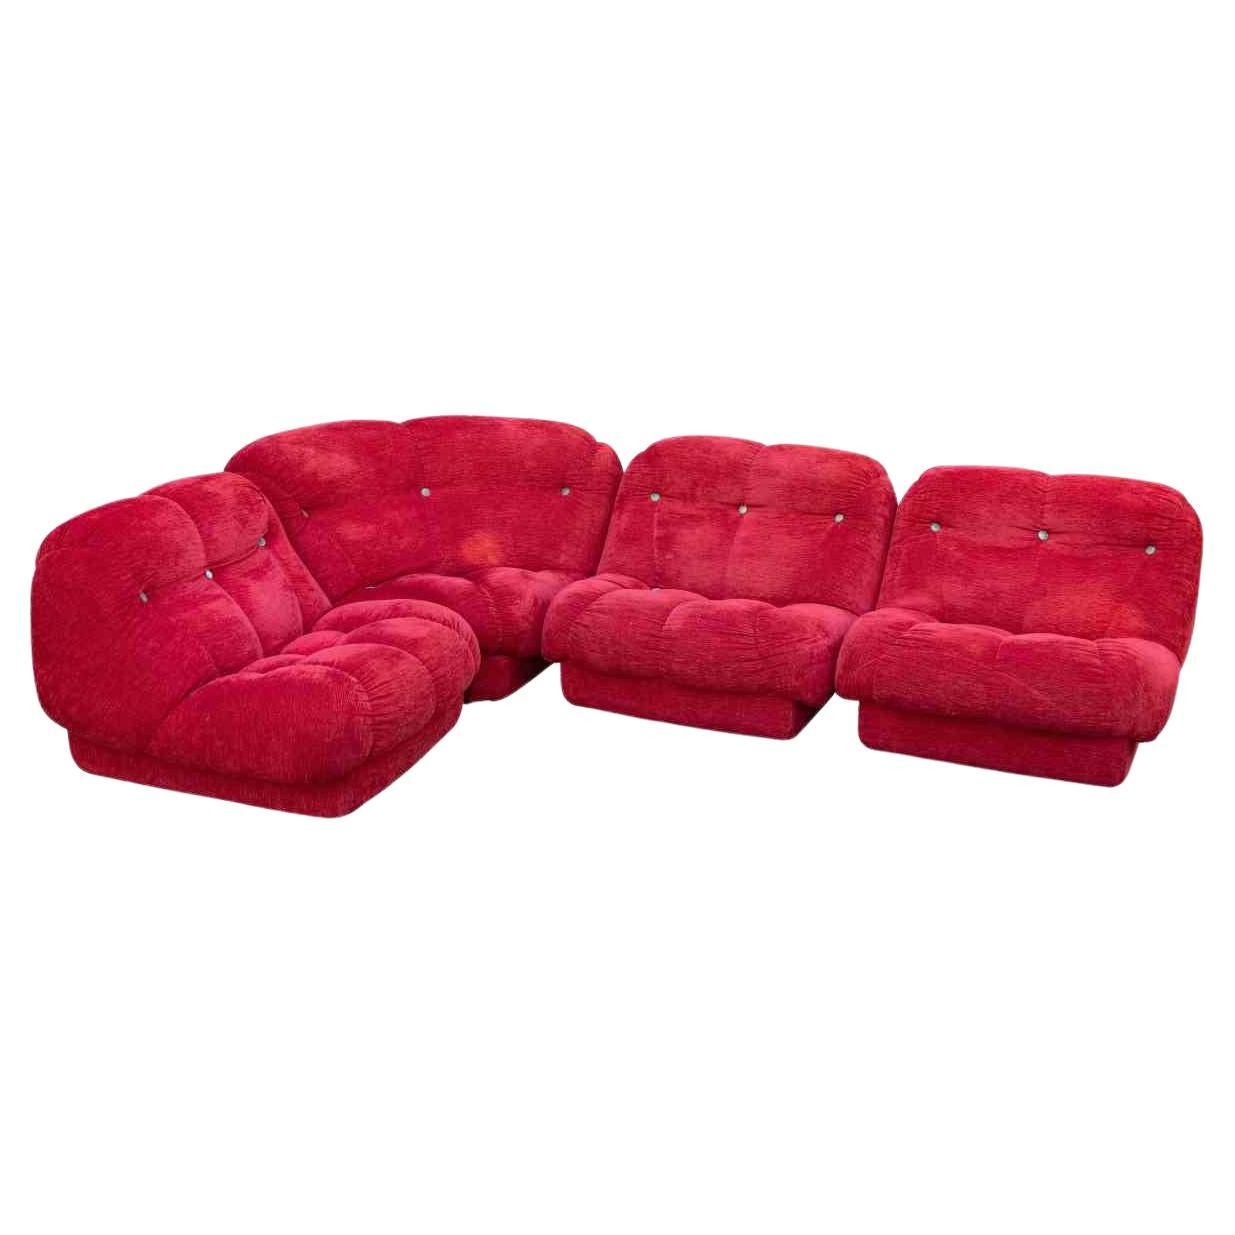 Red Nuvolone Sofa by Rino Maturi, 1970s